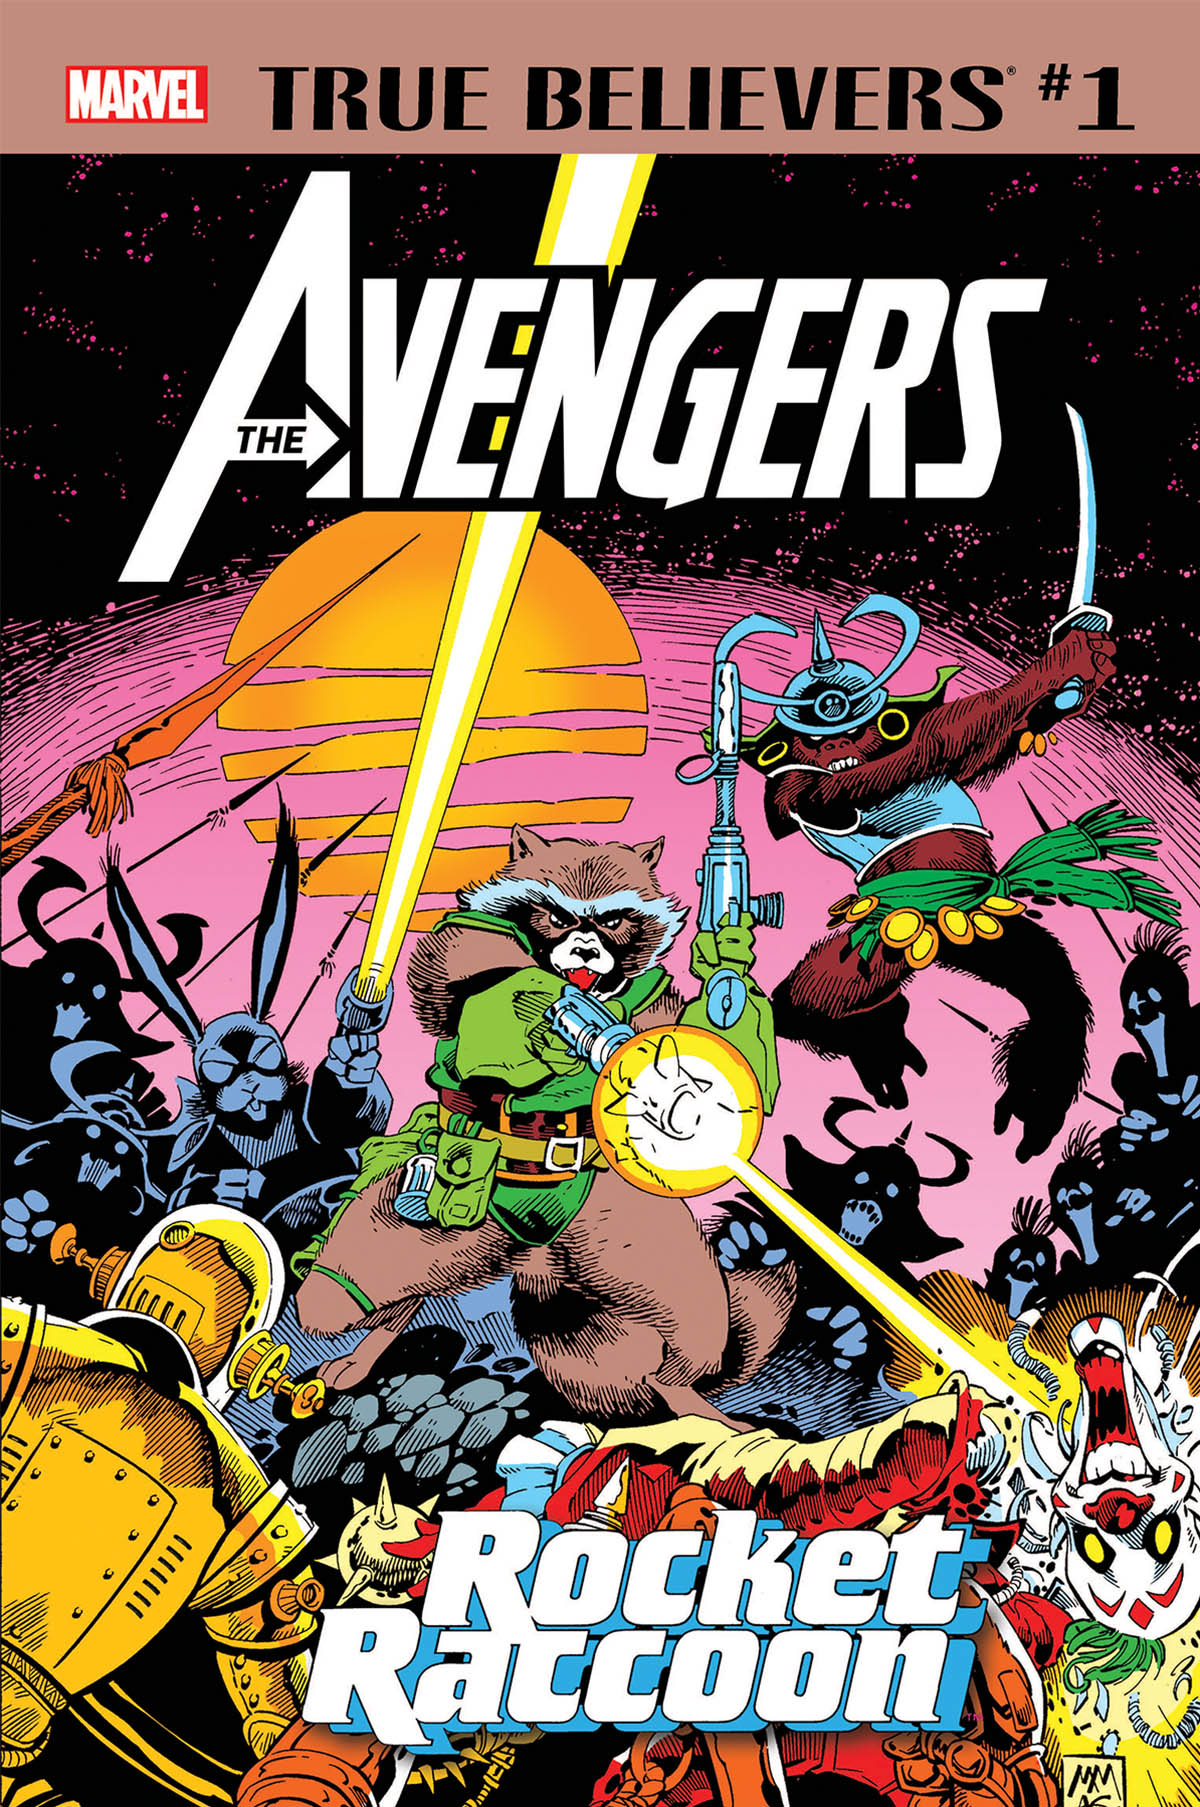 True Believers: Avengers - Rocket Raccoon (2019) #1